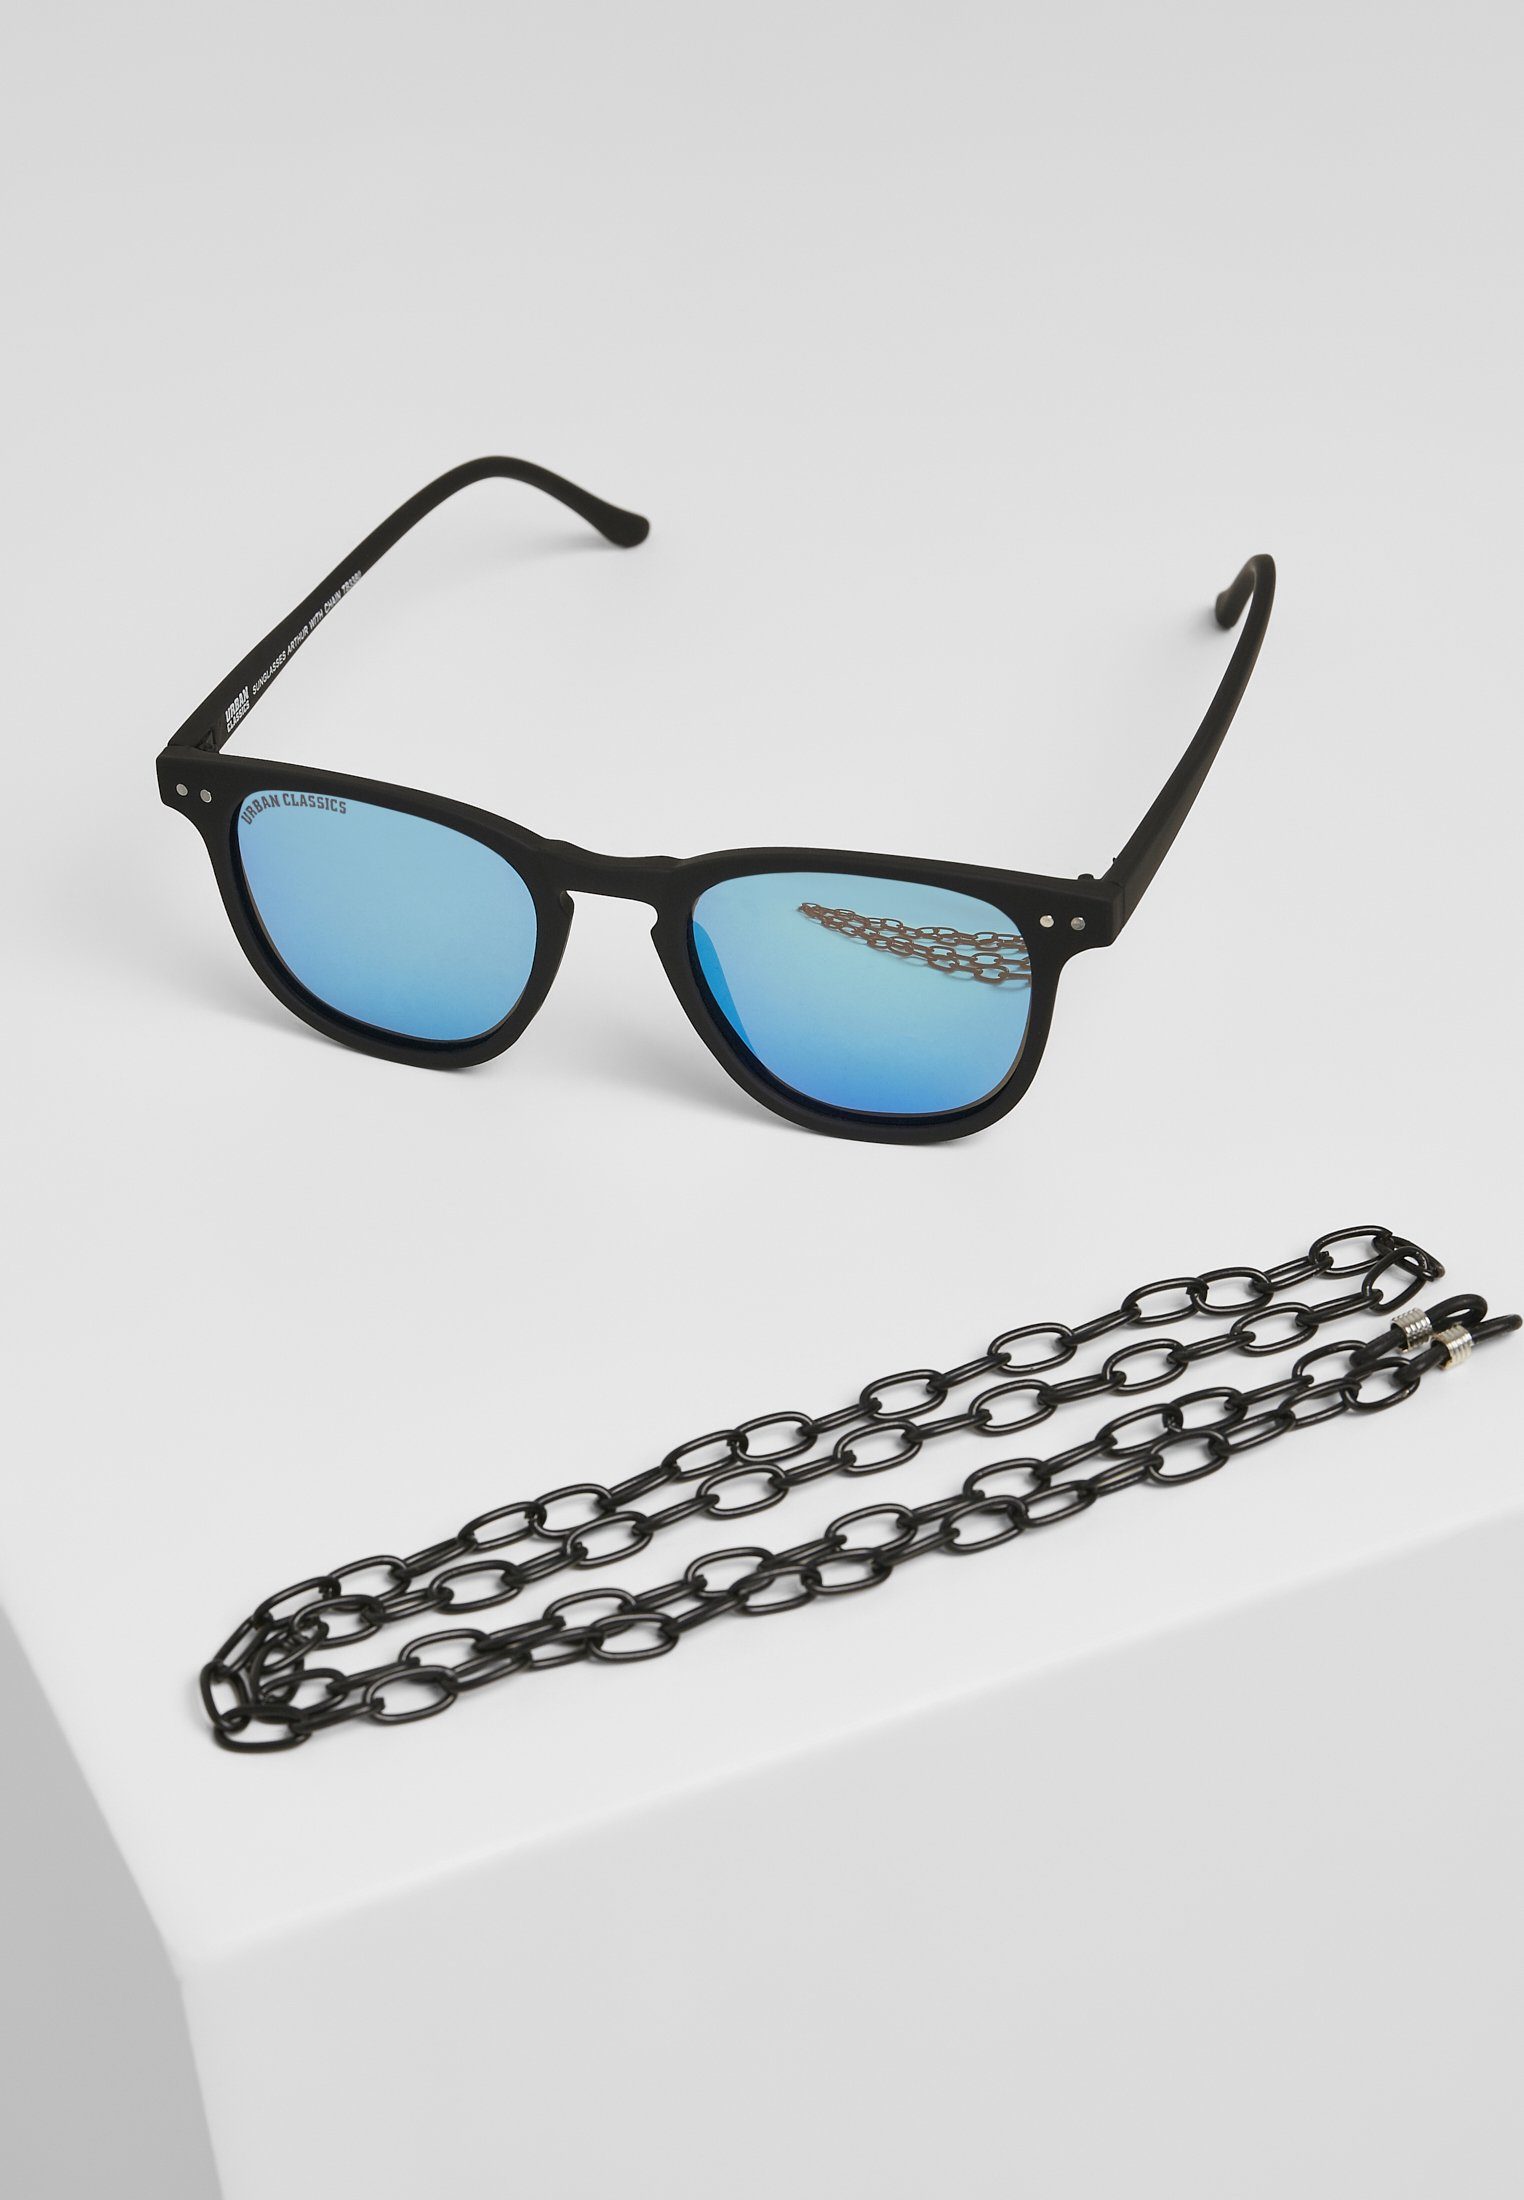 URBAN CLASSICS Sonnenbrille Unisex Sunglasses Arthur with Chain black/blue | Sonnenbrillen